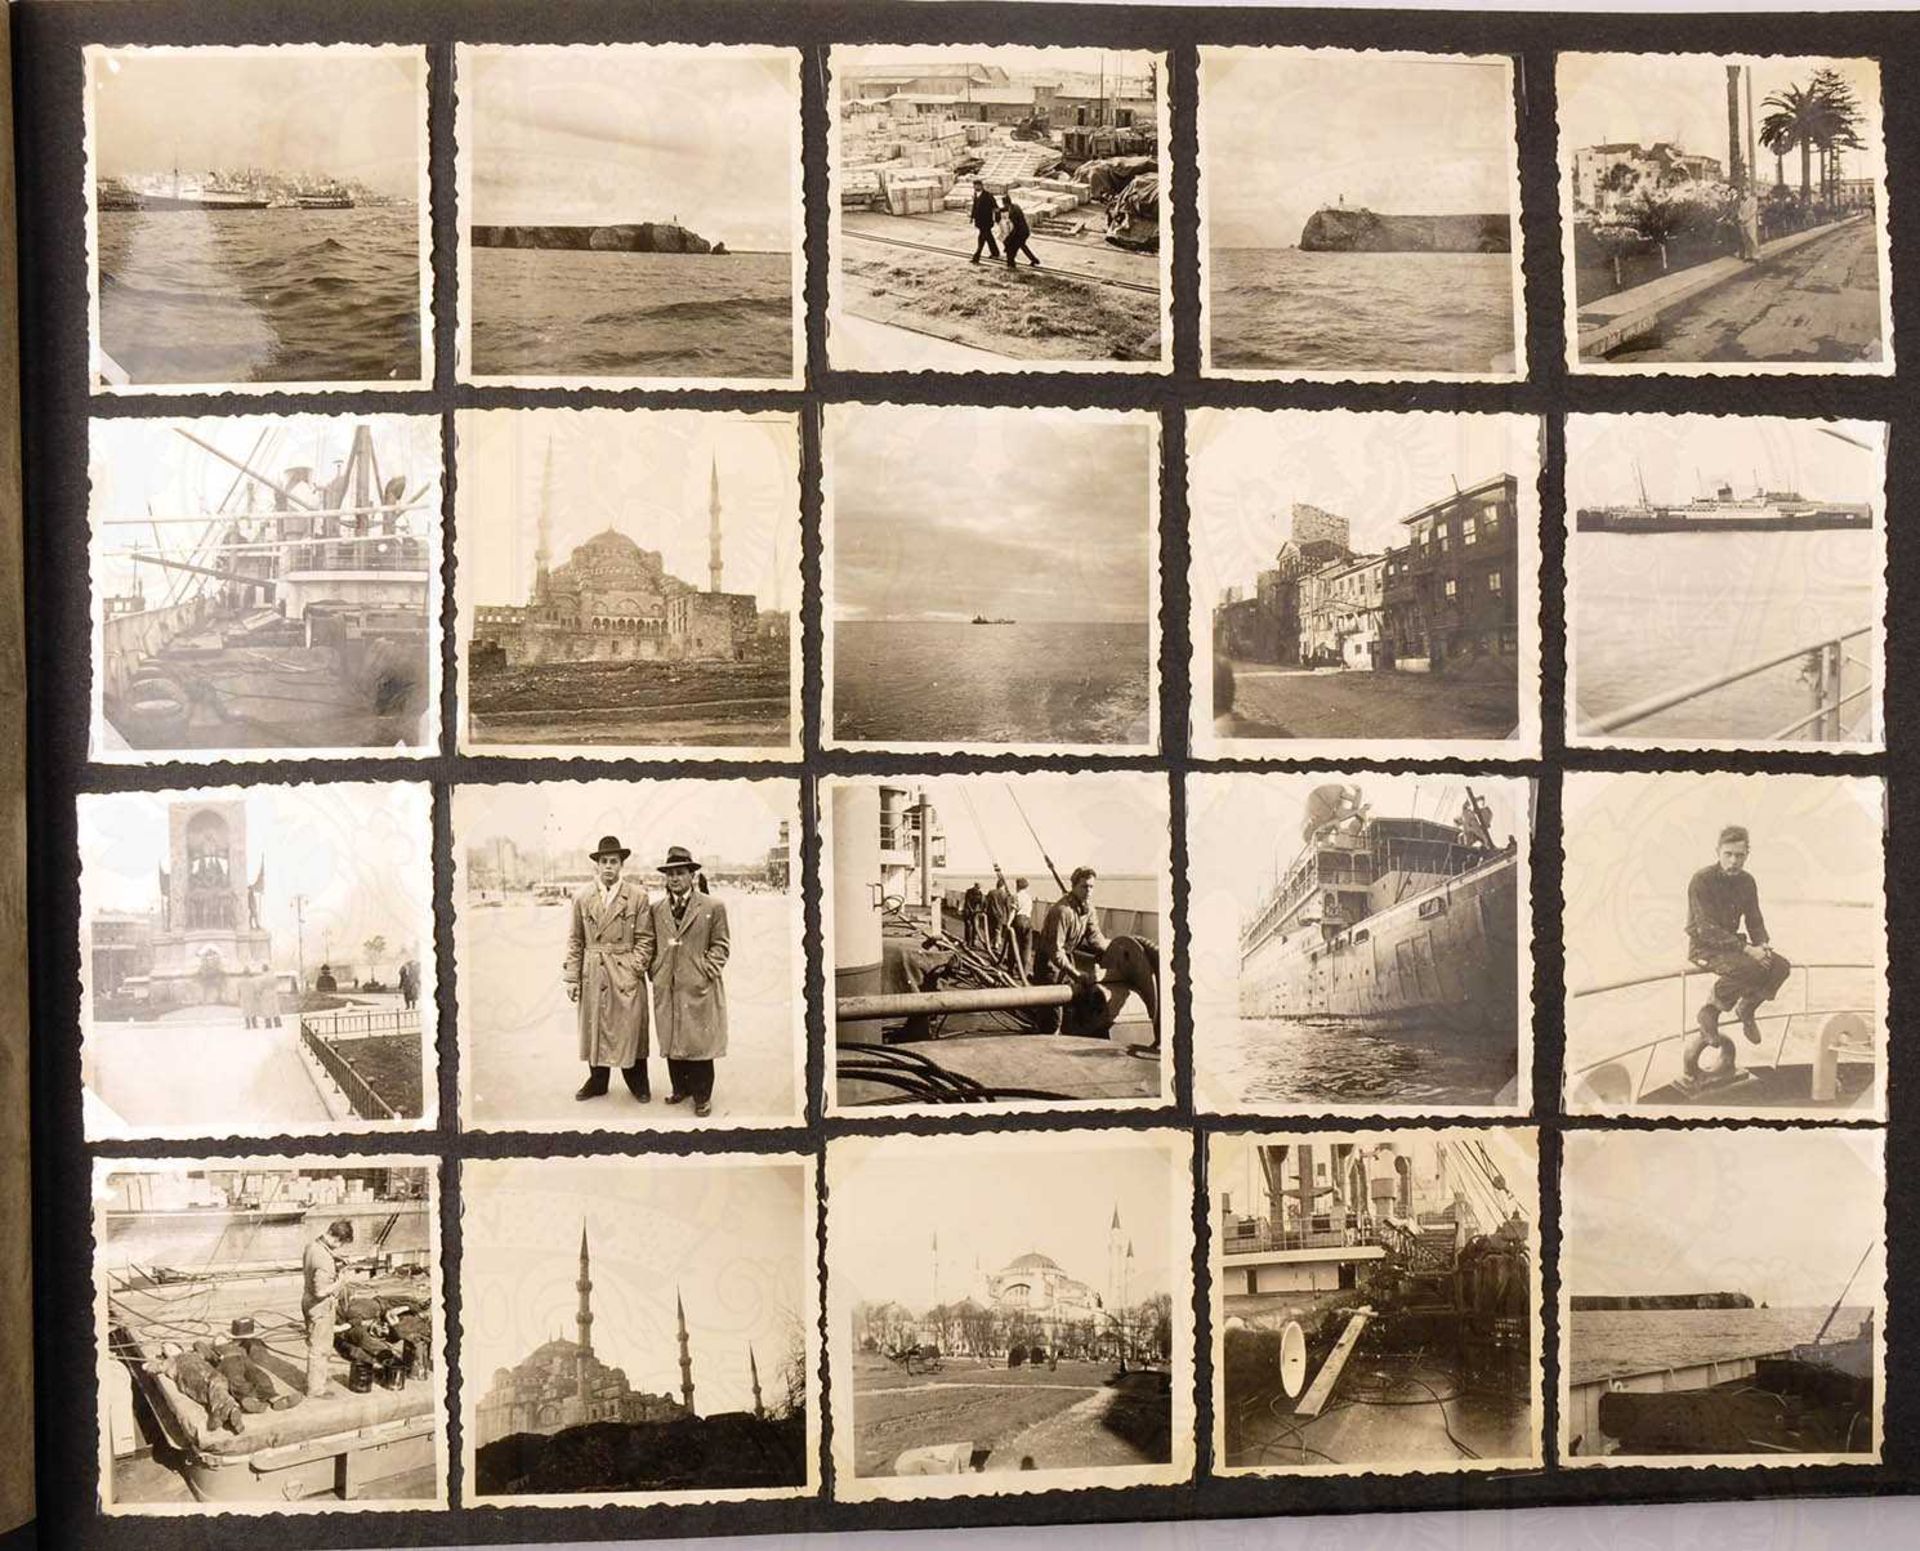 FOTOALBUM EINES BESATZUNGSMITGLIEDS, des deutschen Frachtschiffes Libanon, über 170 Aufn., um - Bild 3 aus 5